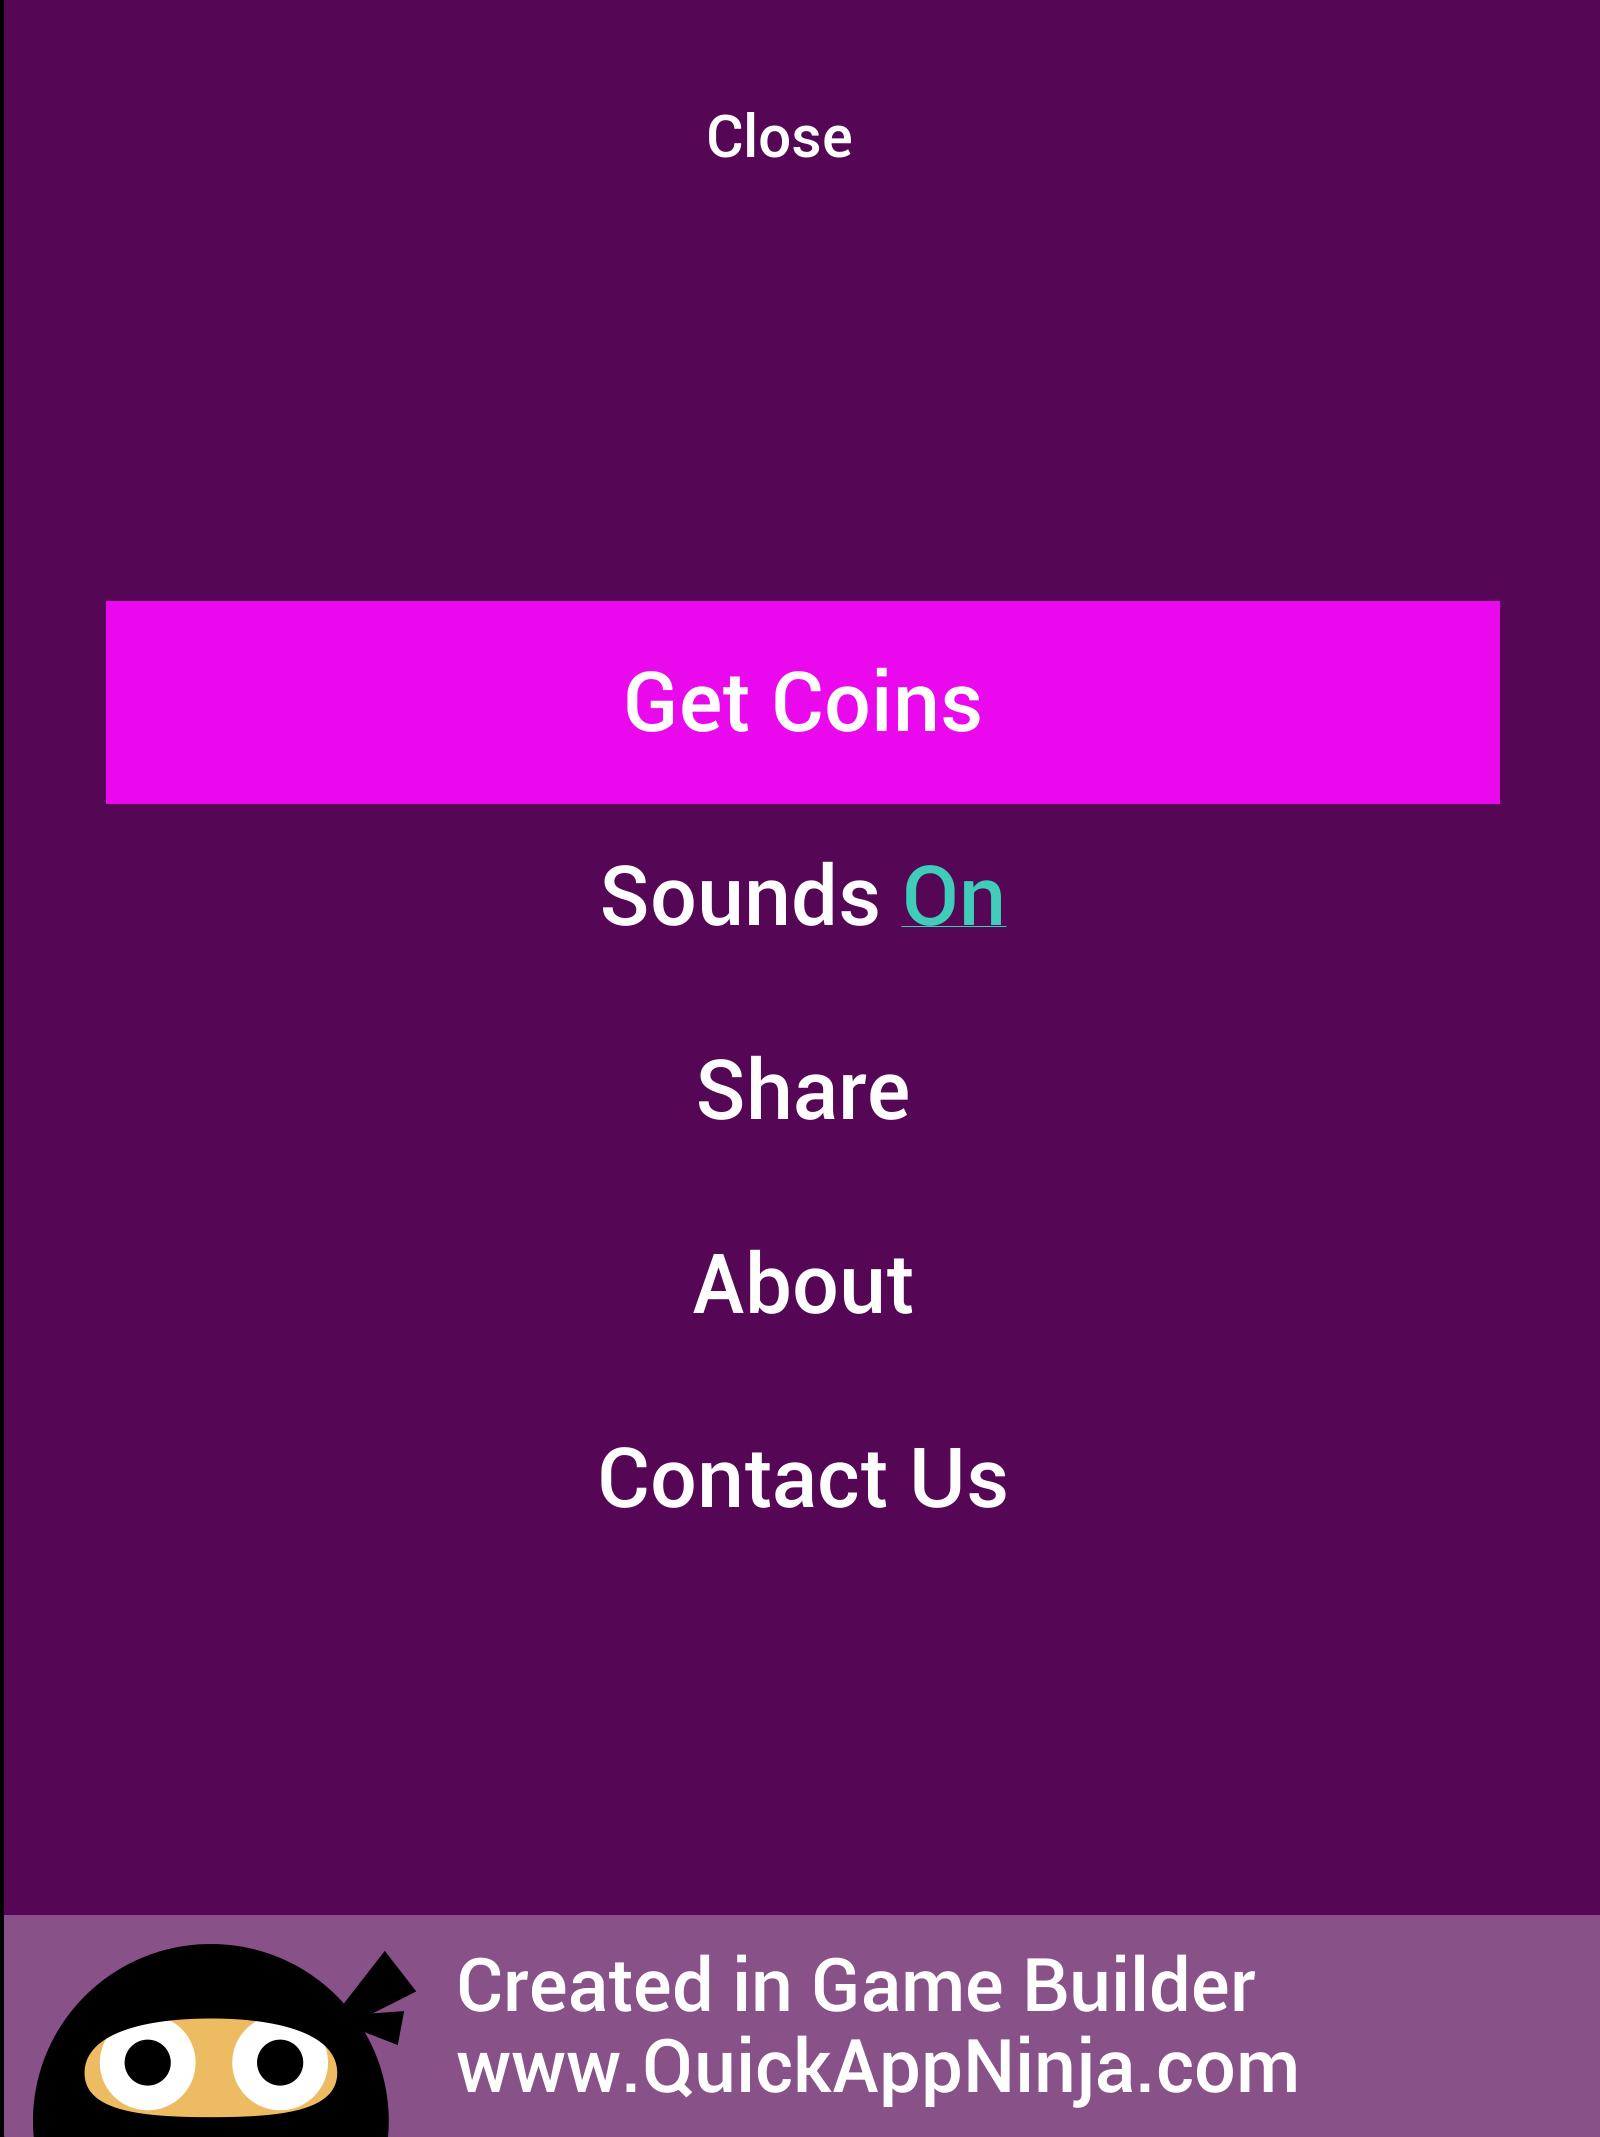 Share sounds. Play Quiz screenshot.